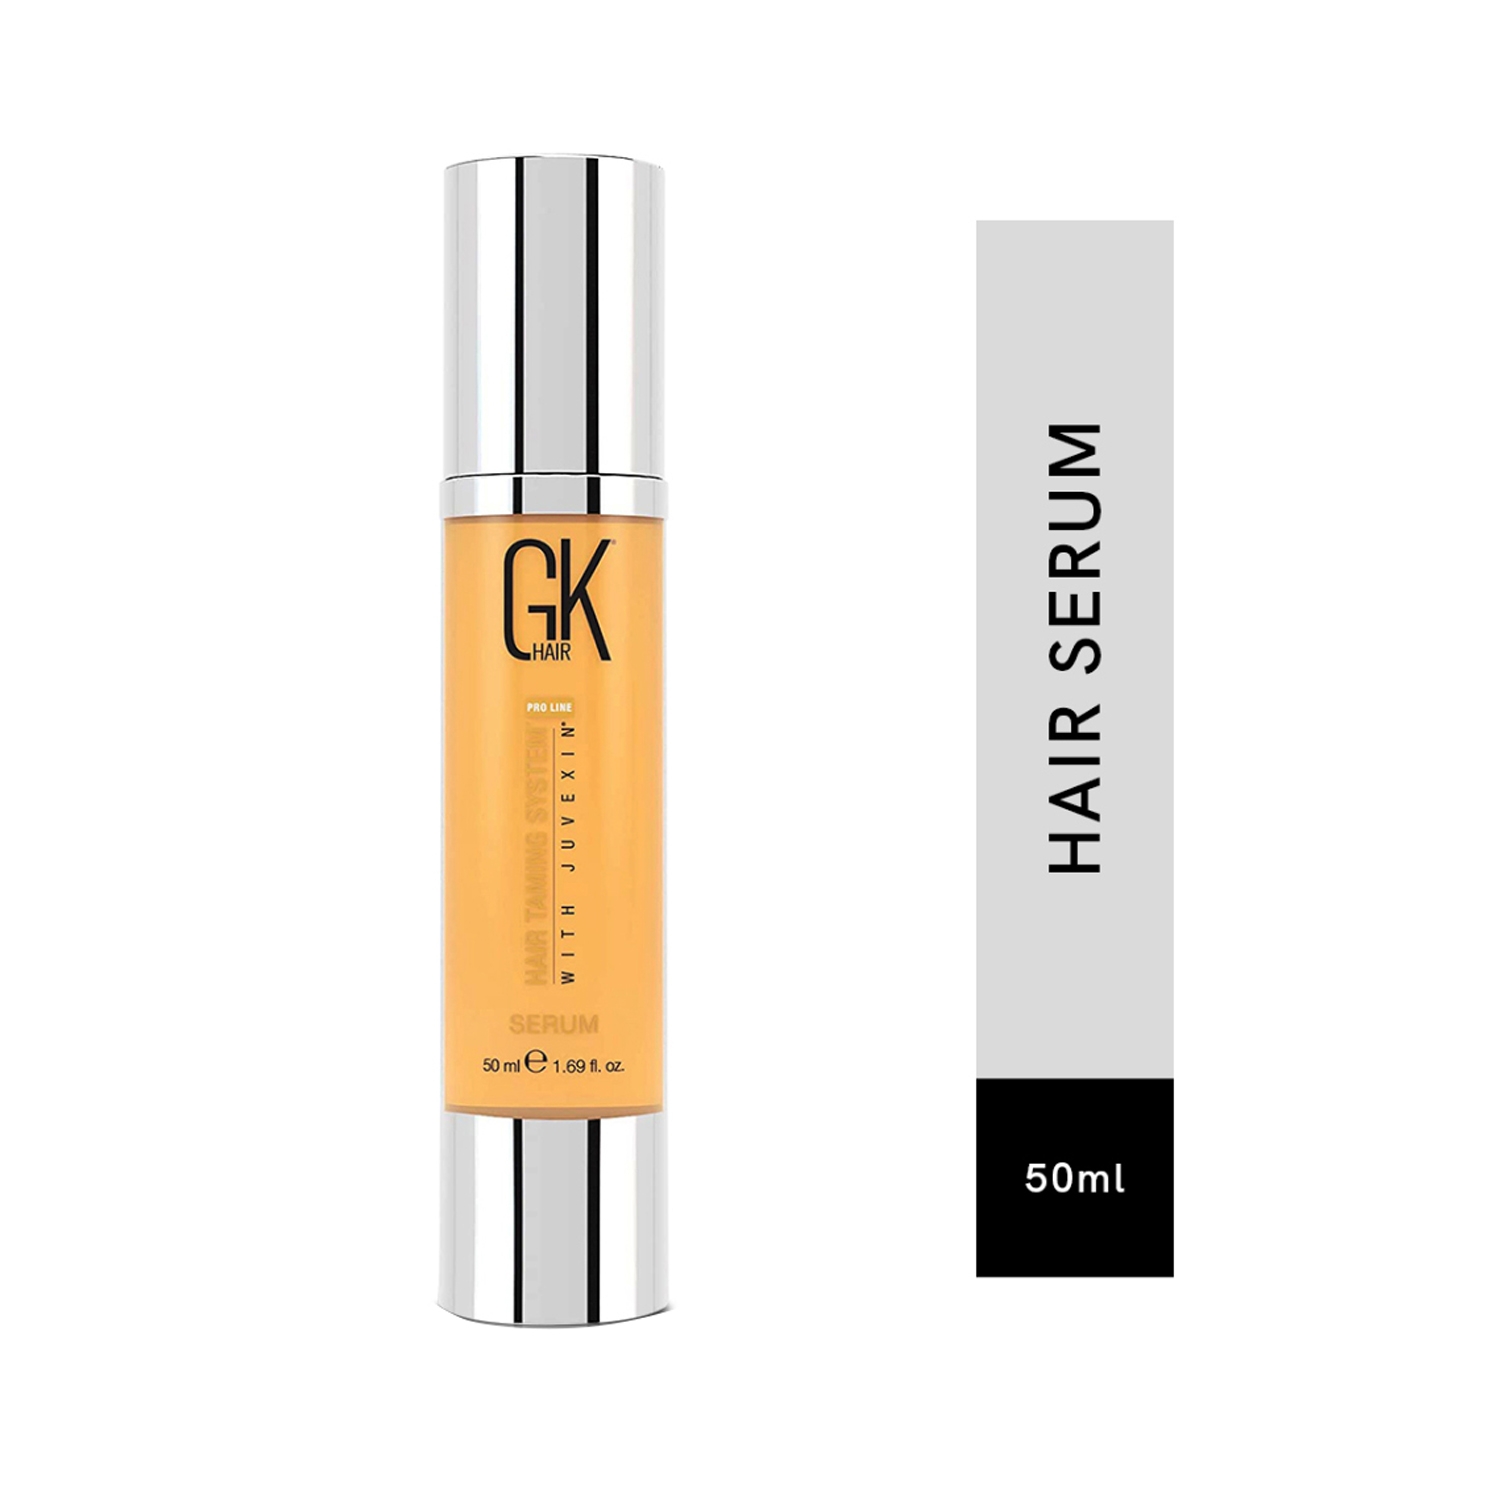 GK Hair | GK Hair Taming System Argan Serum (50ml)